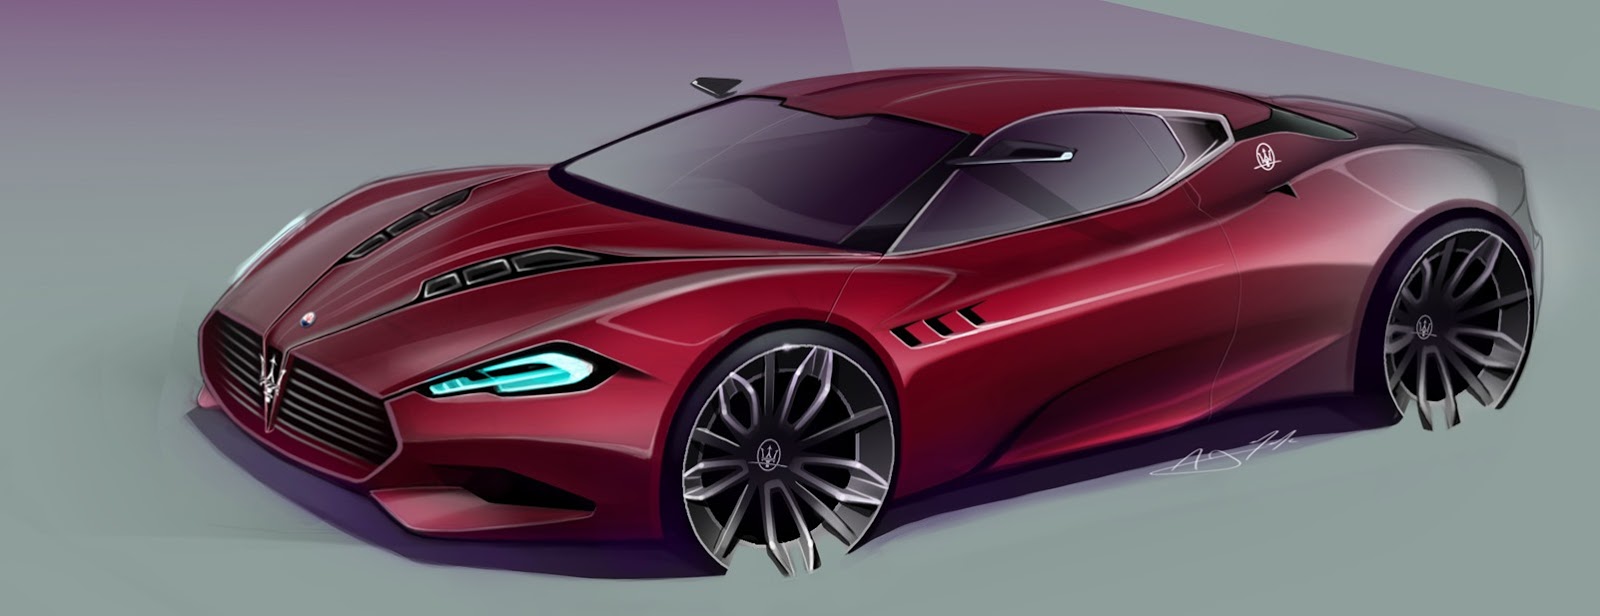 مازيراتي "جران كورسا" دراسة تصميم جديد وأنيق للسيارات الكوبية Maserati GranCorsa 2